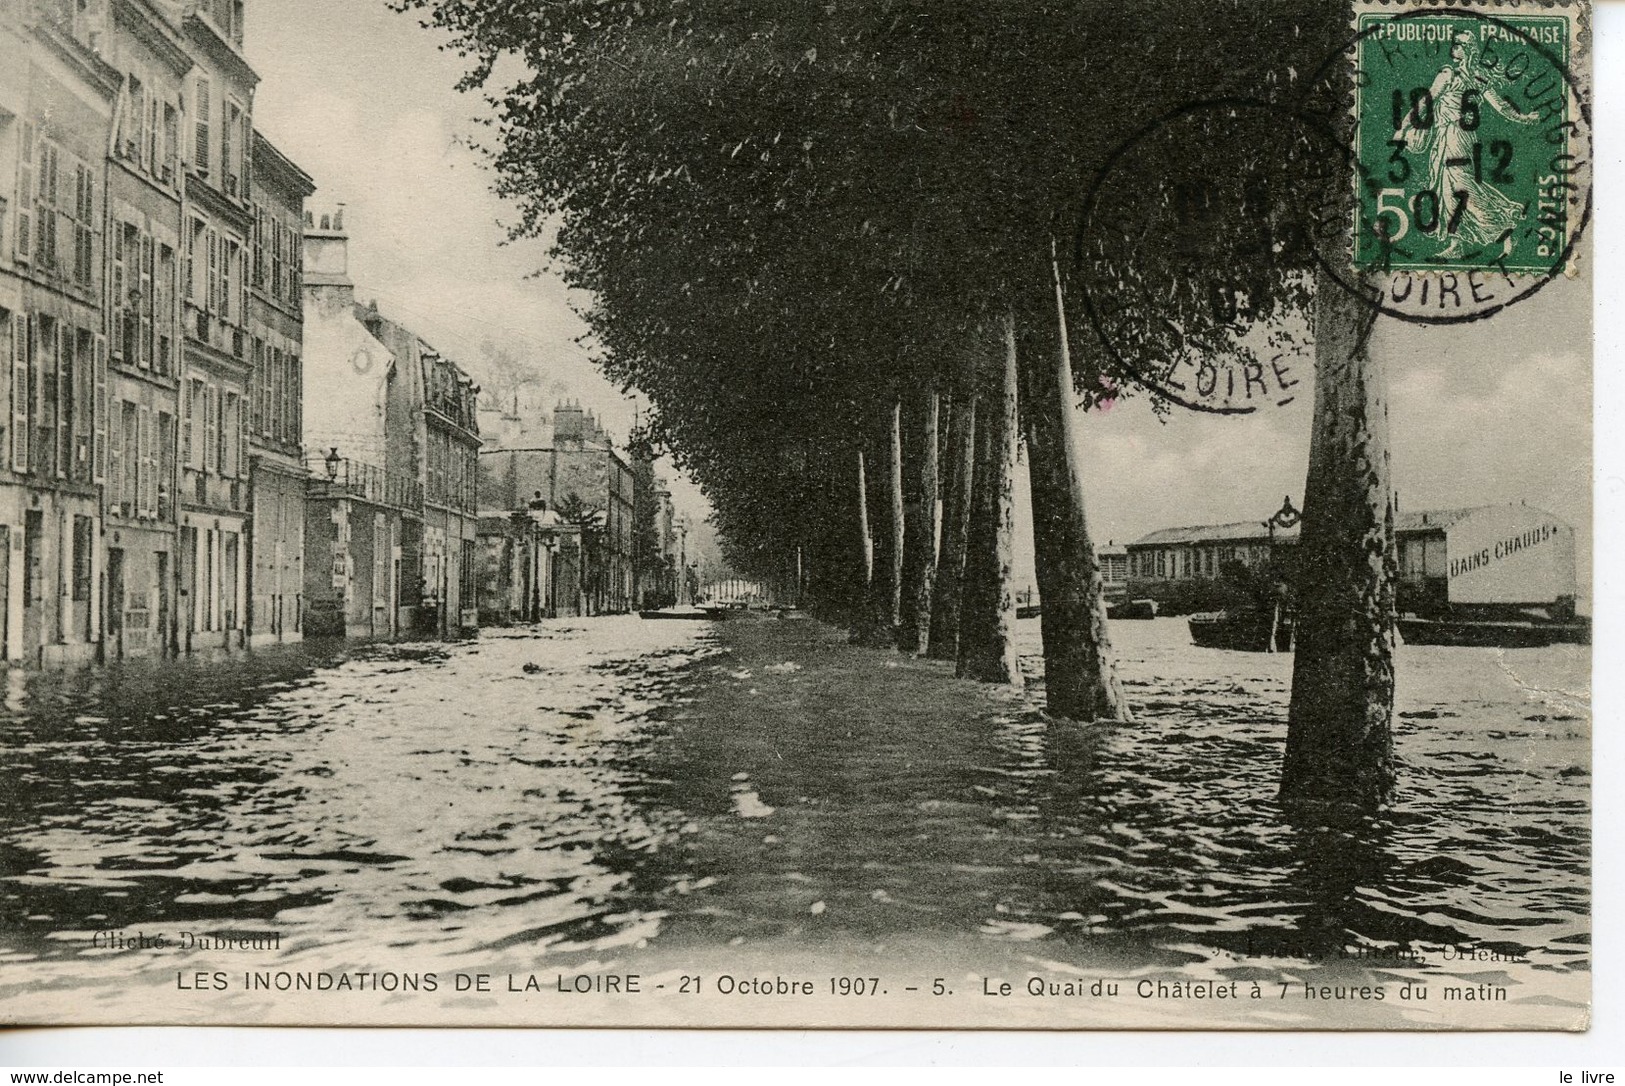 CPA 45 ORLEANS. INONDATIONS DE LA LOIRE 1907. QUAI DU CHATELET